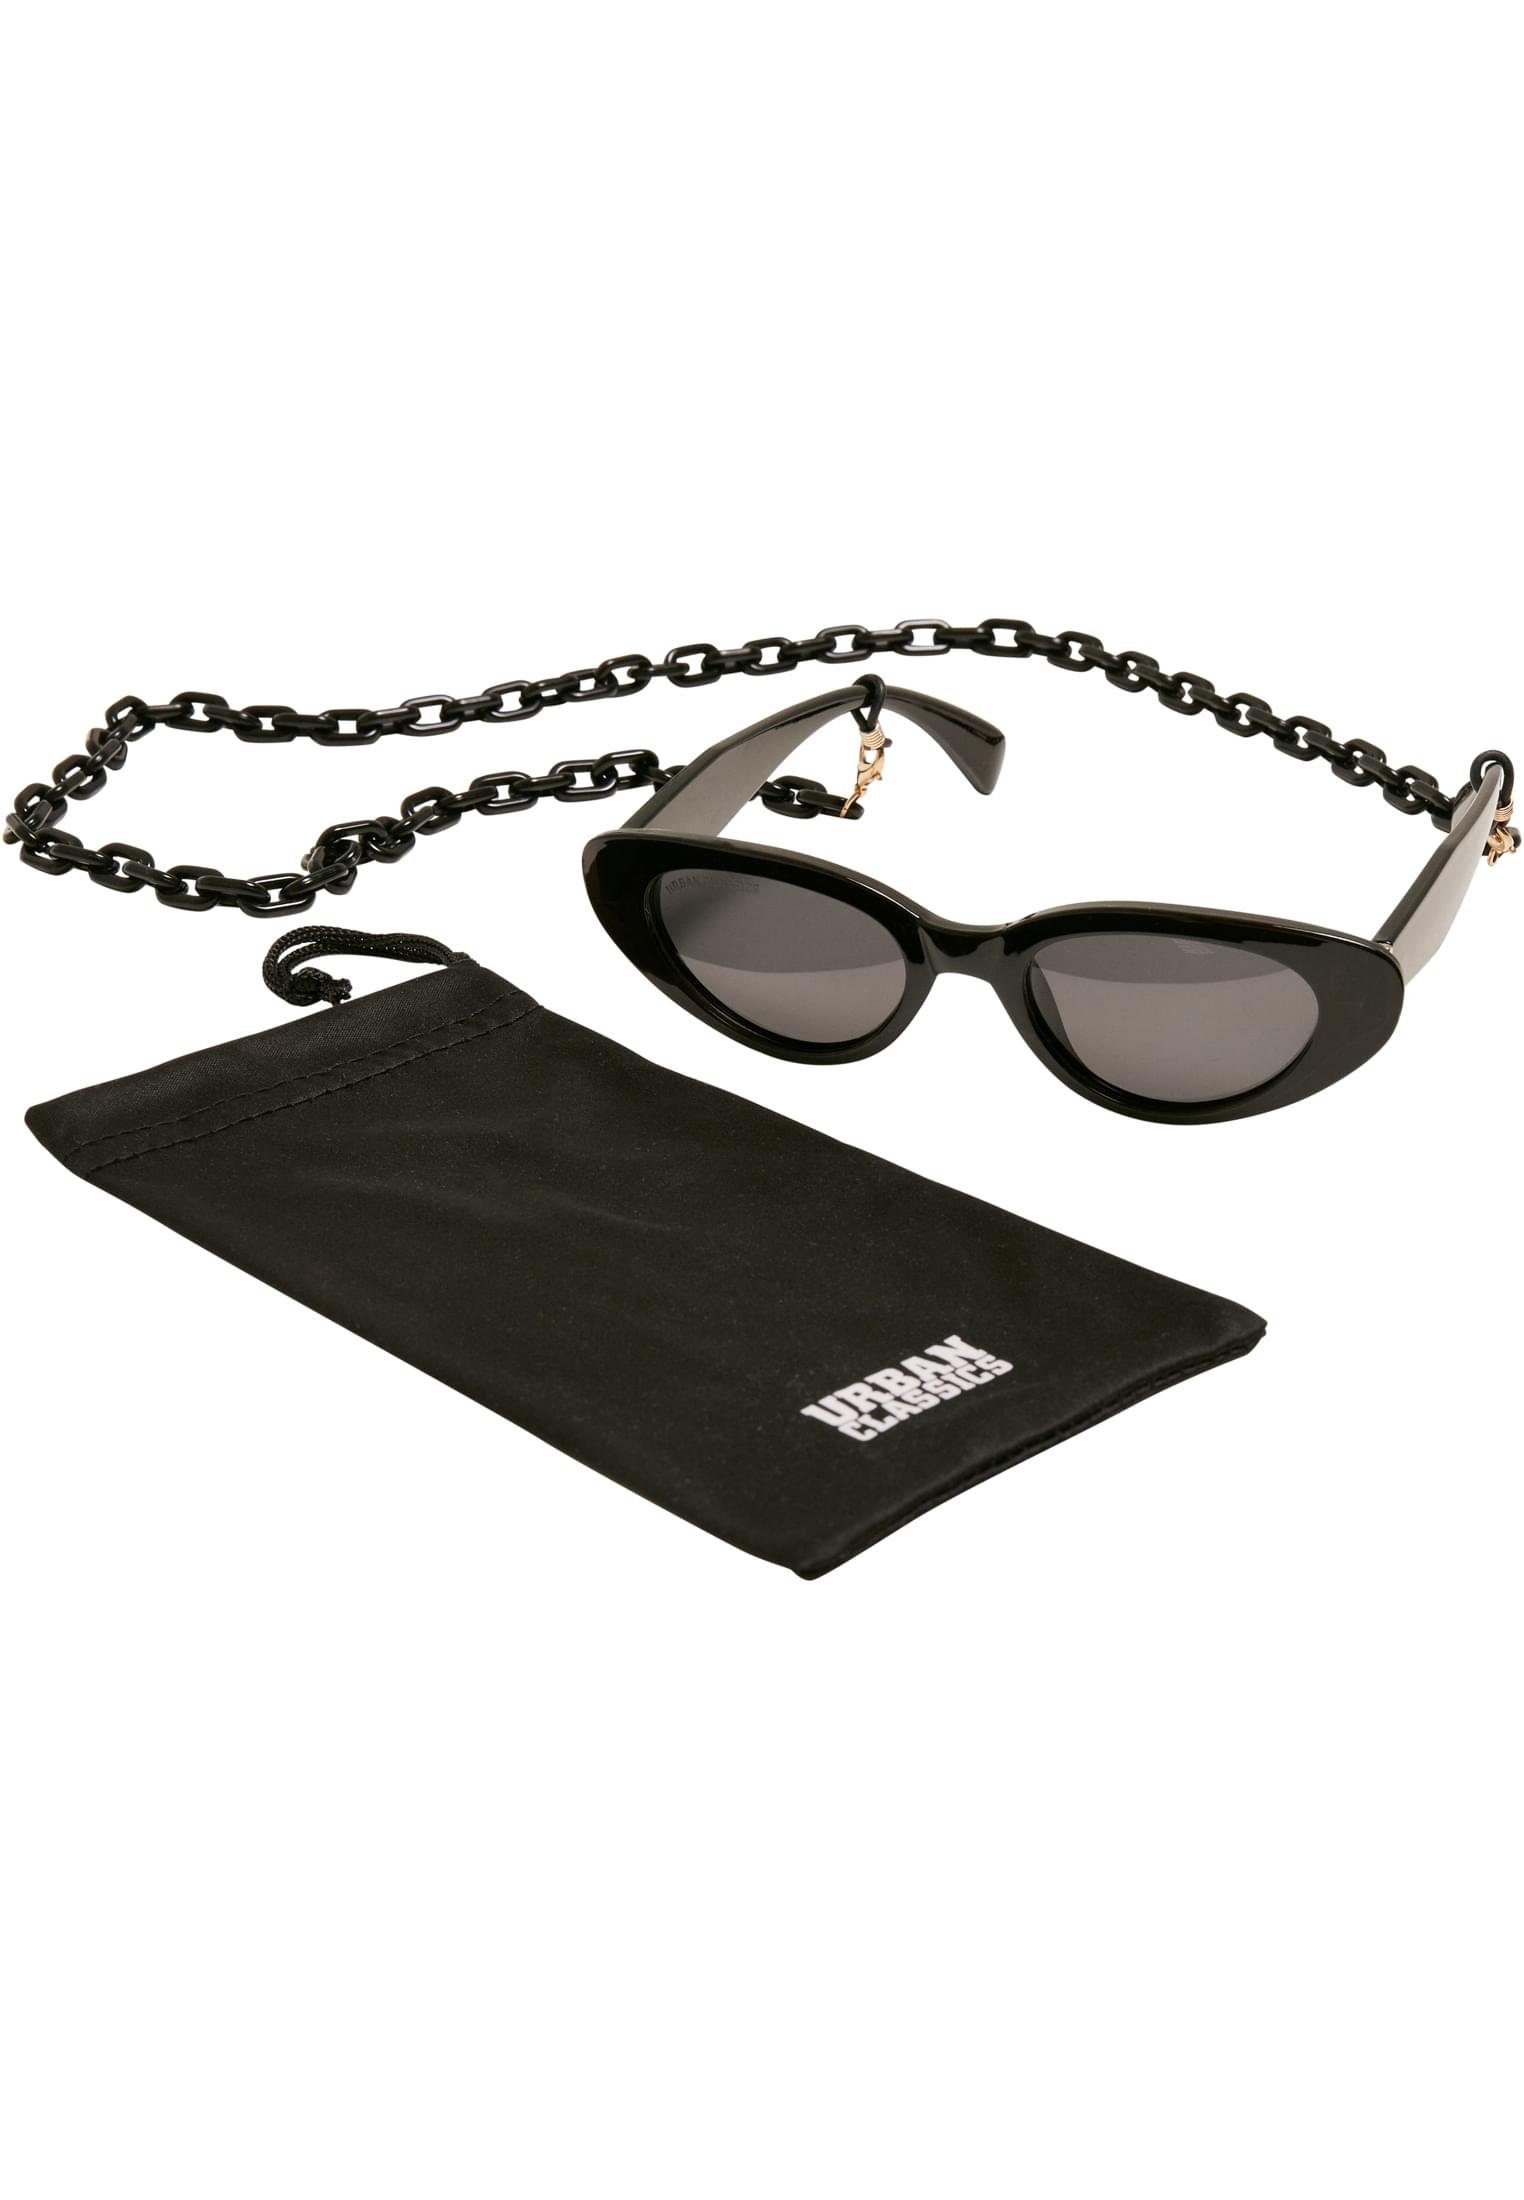 URBAN CLASSICS Sonnenbrille Unisex Sunglasses Puerto Rico With Chain, Ideal  auch für Sport im Freien geeignet